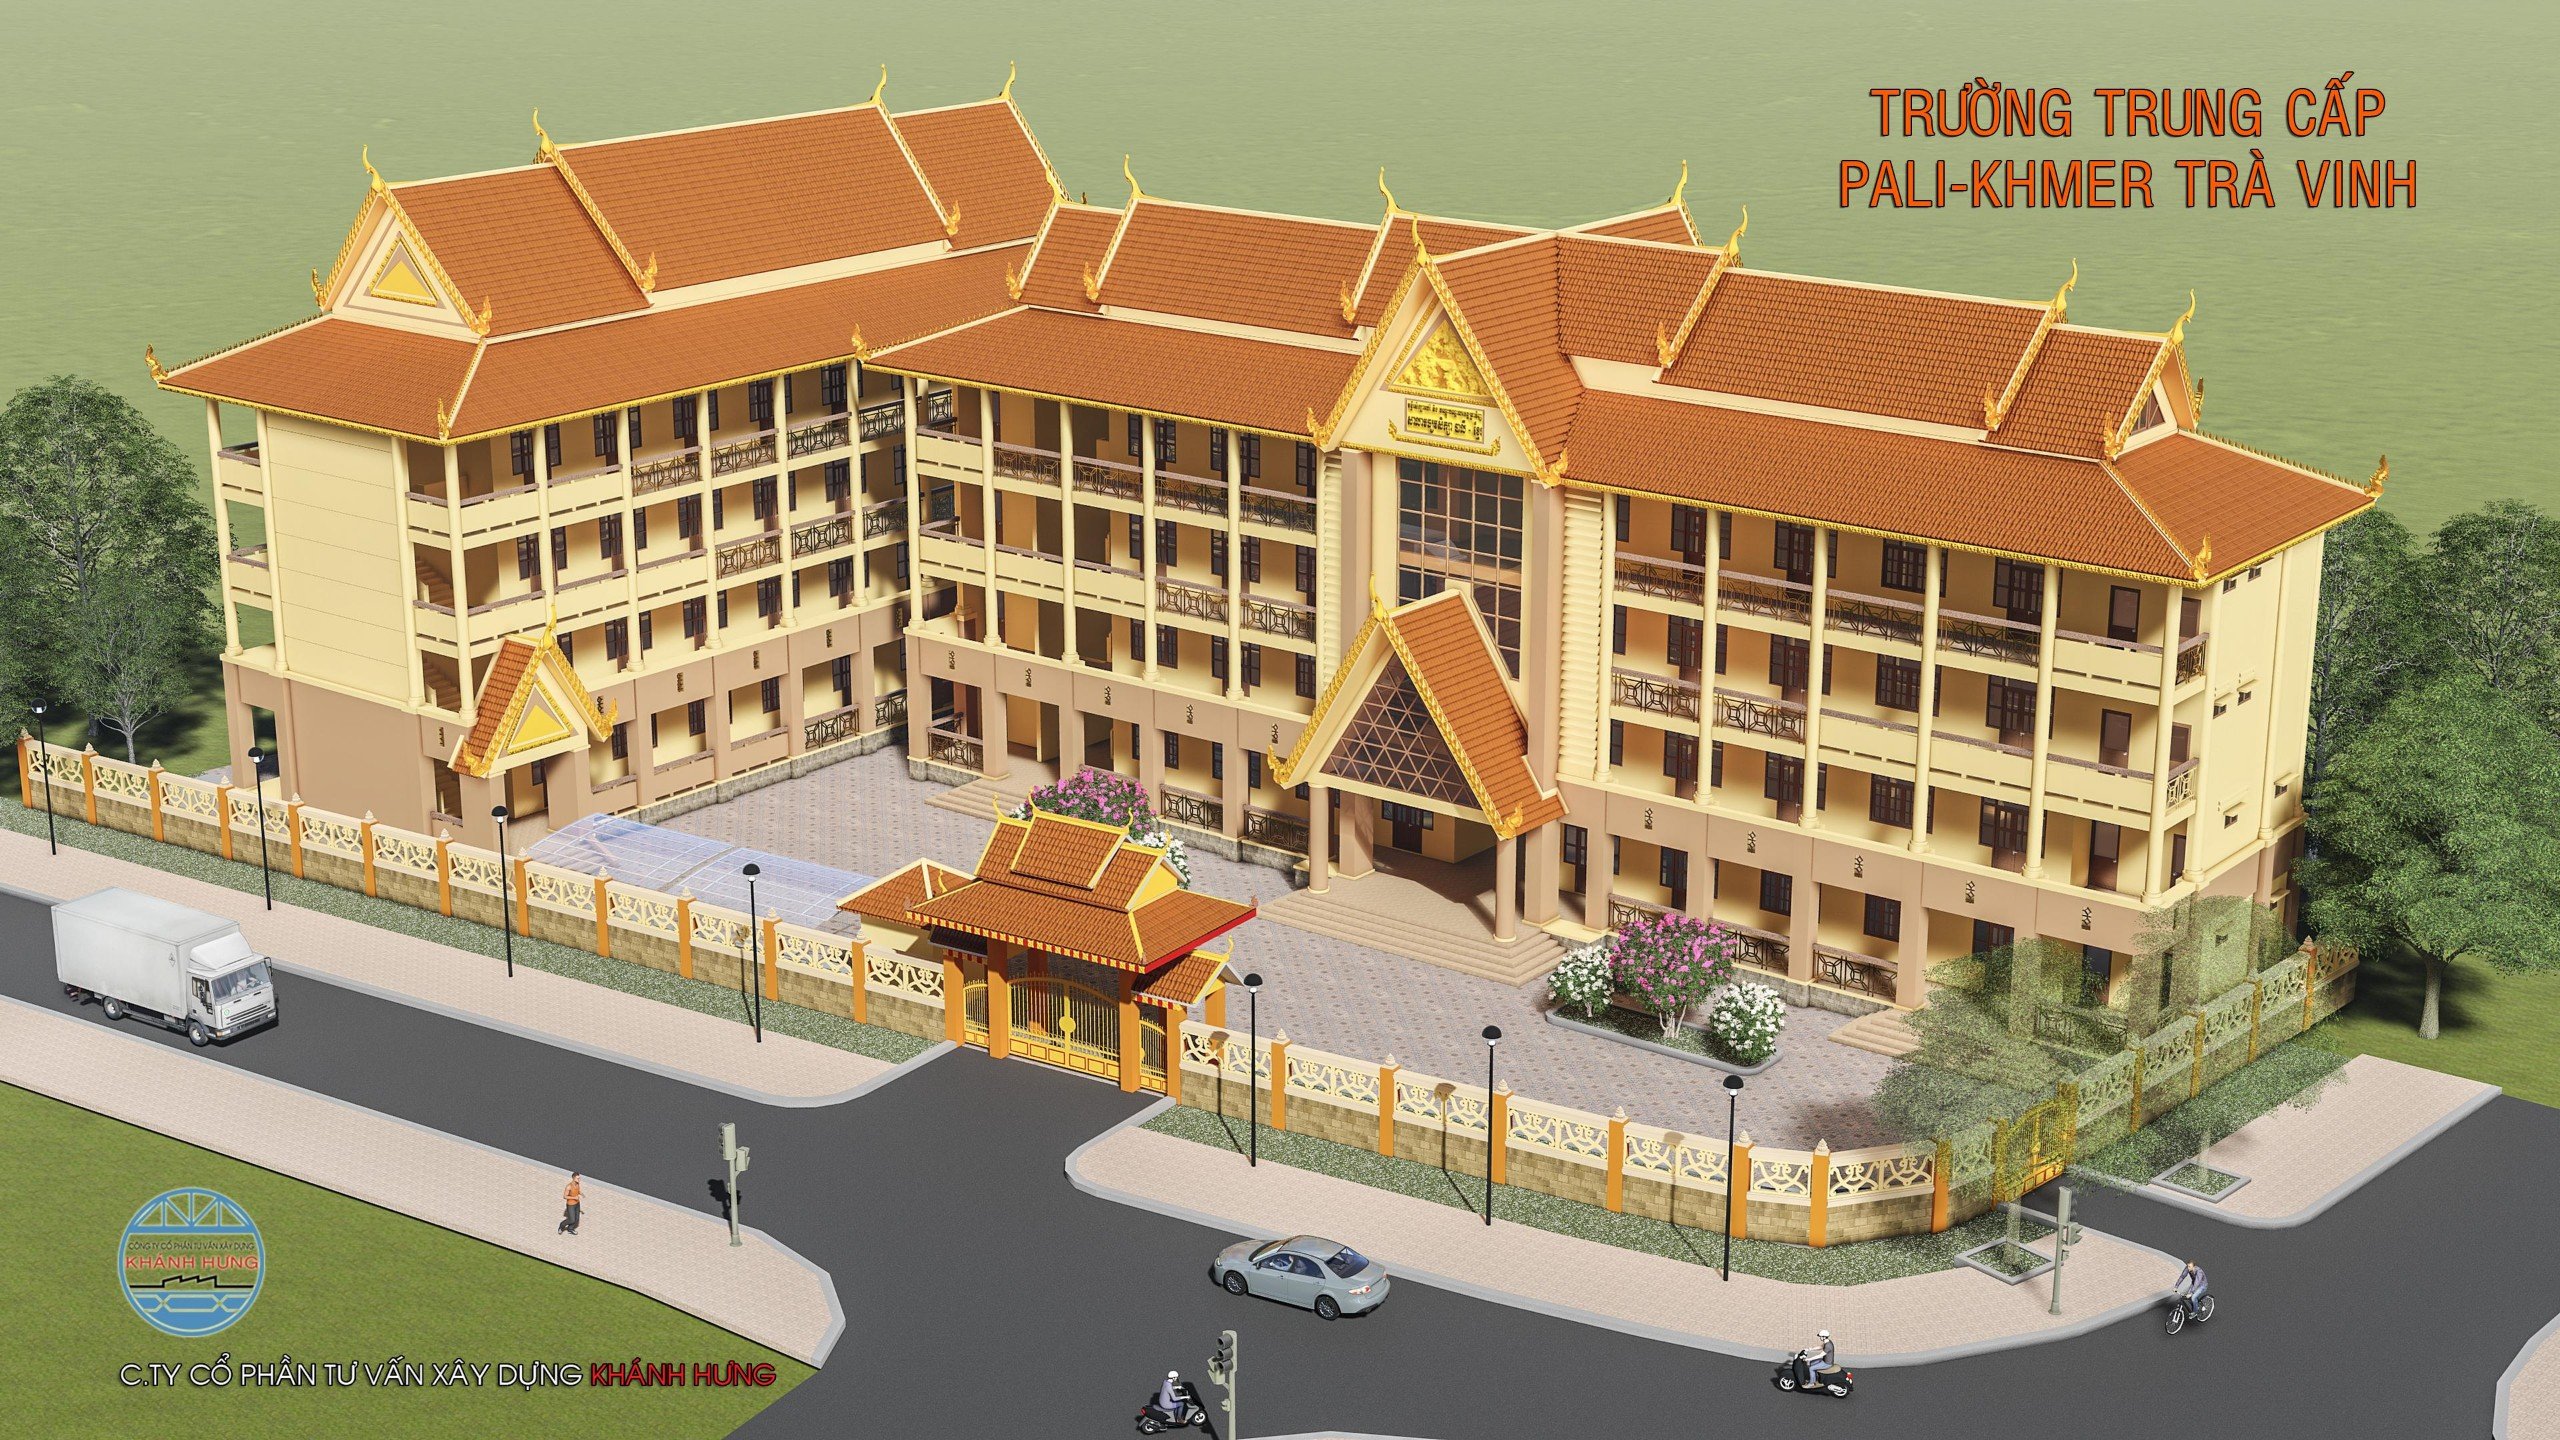 Trường Trung Cấp Pali - Khmer tỉnh Trà Vinh